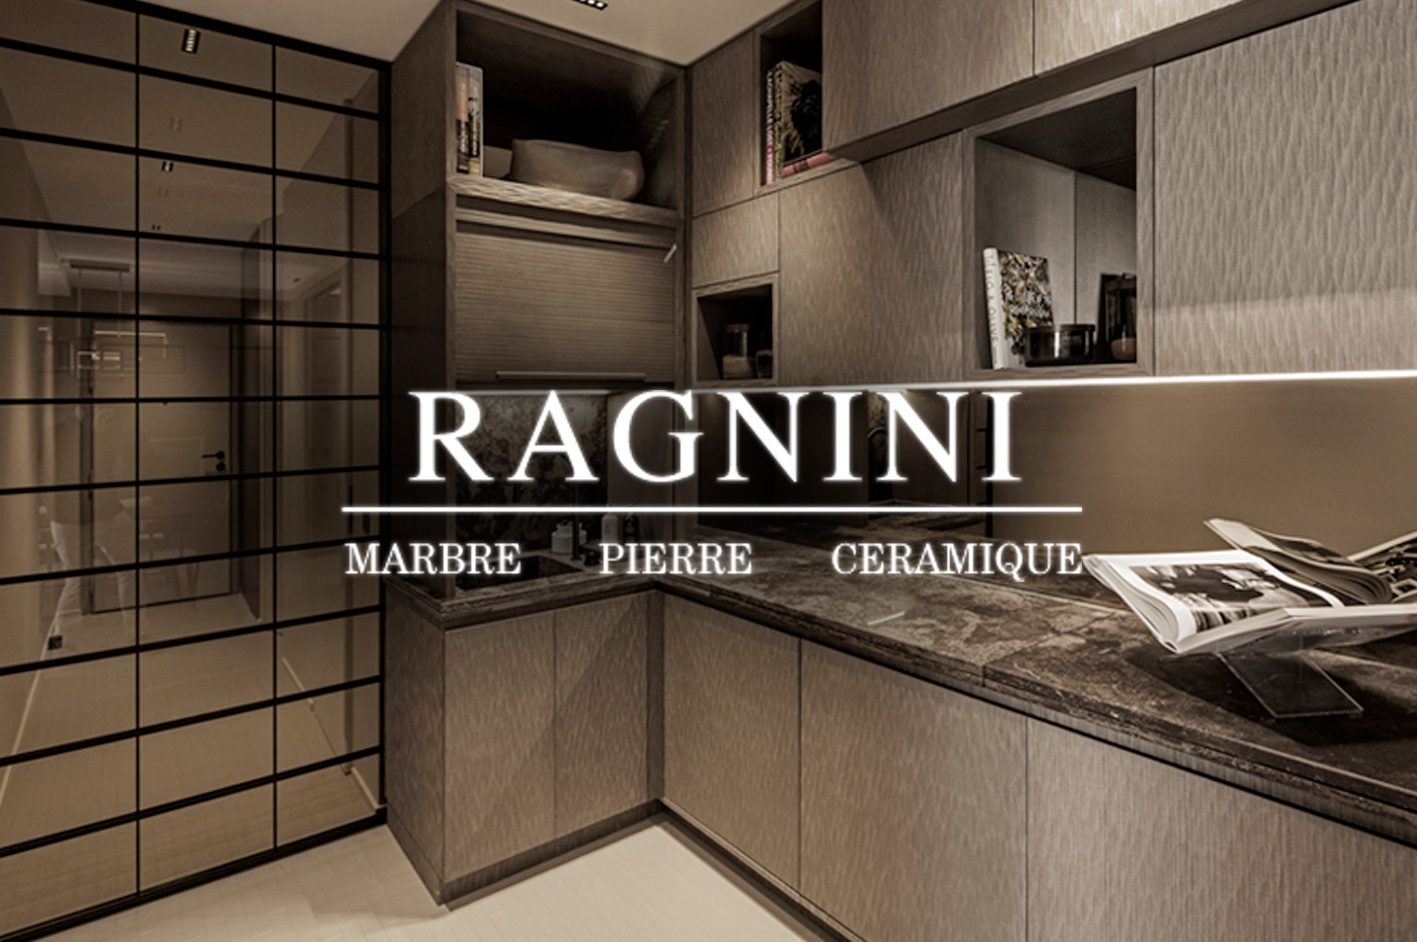 Access Base Sud a développé le site internet Ragnini marbre pierre céramique